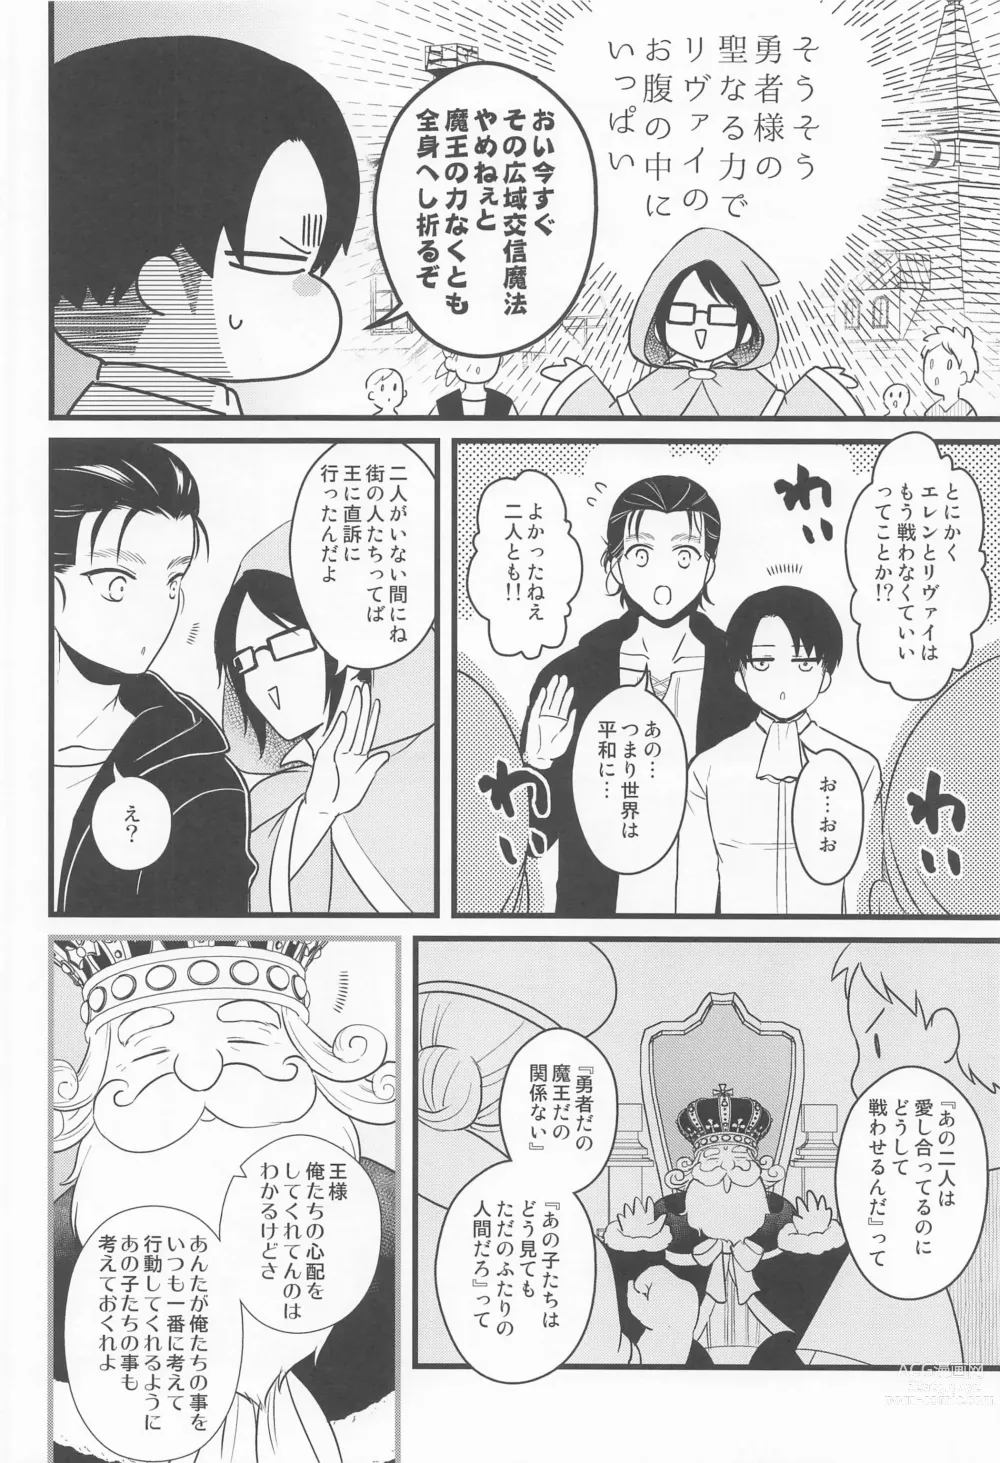 Page 41 of doujinshi Isekai Tensei Shite Yuusha ni Natta kara ni wa Maou o Sukutte mo Ii yo na!?